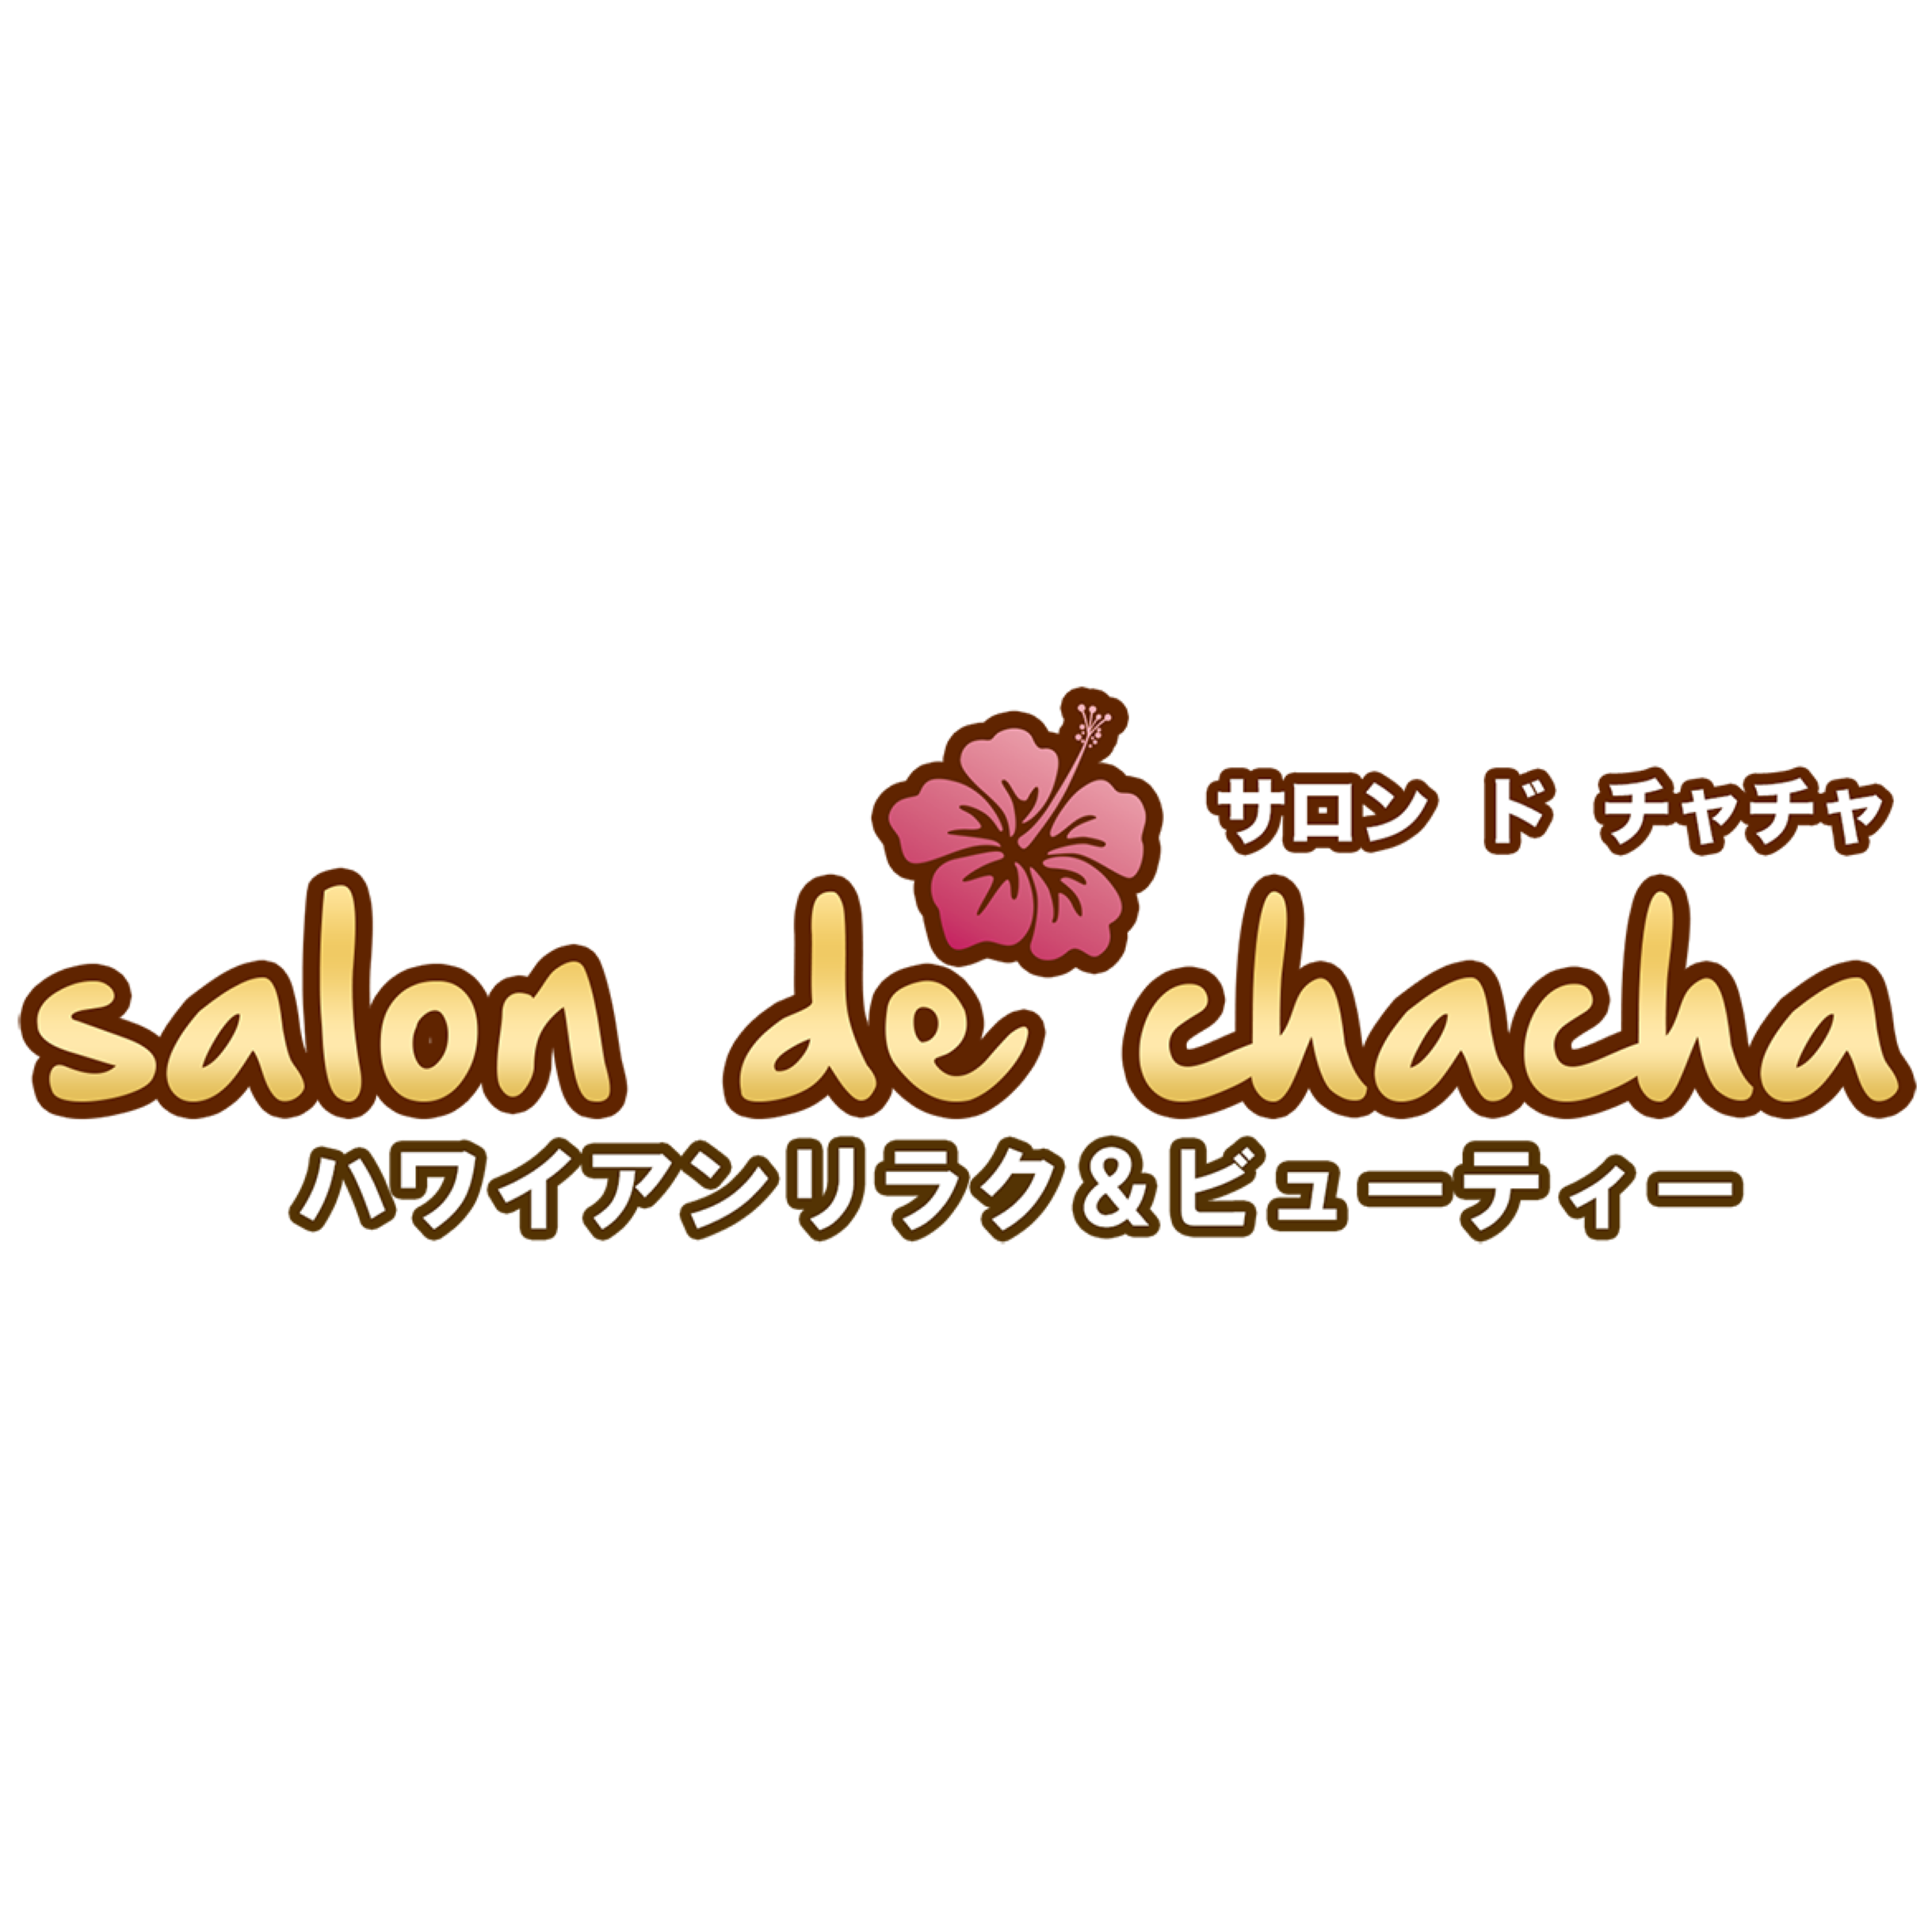 Salon de chacha 新横浜店〜ハワイアンリラク＆ビューティー〜 横浜市 045-534-6245